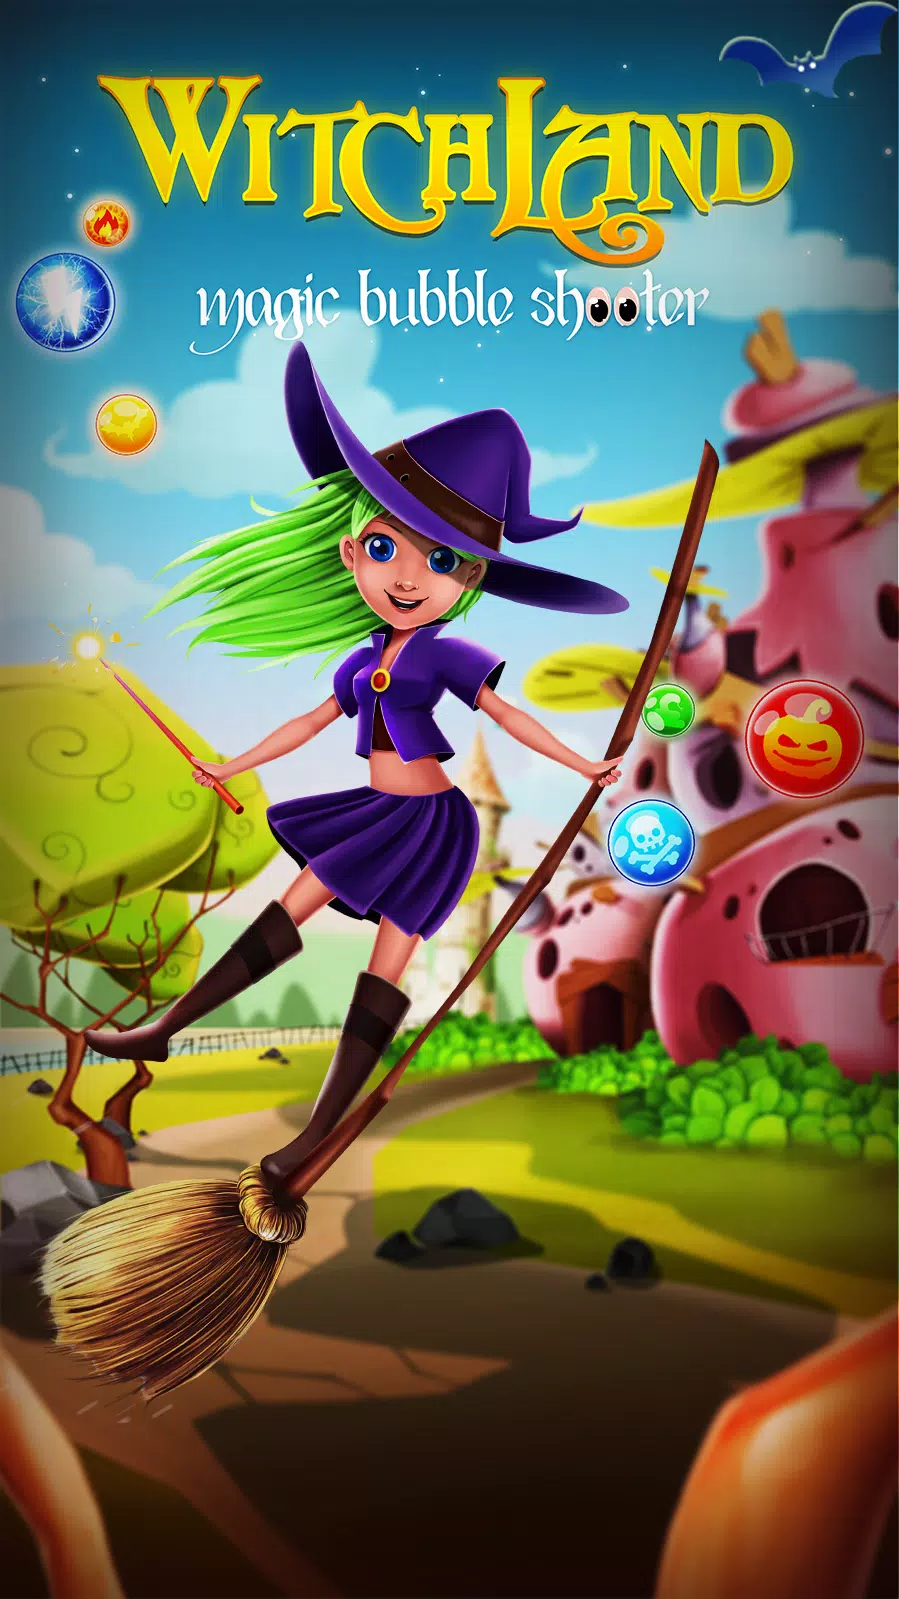 Download do APK de Atirador mágico de bruxa para Android